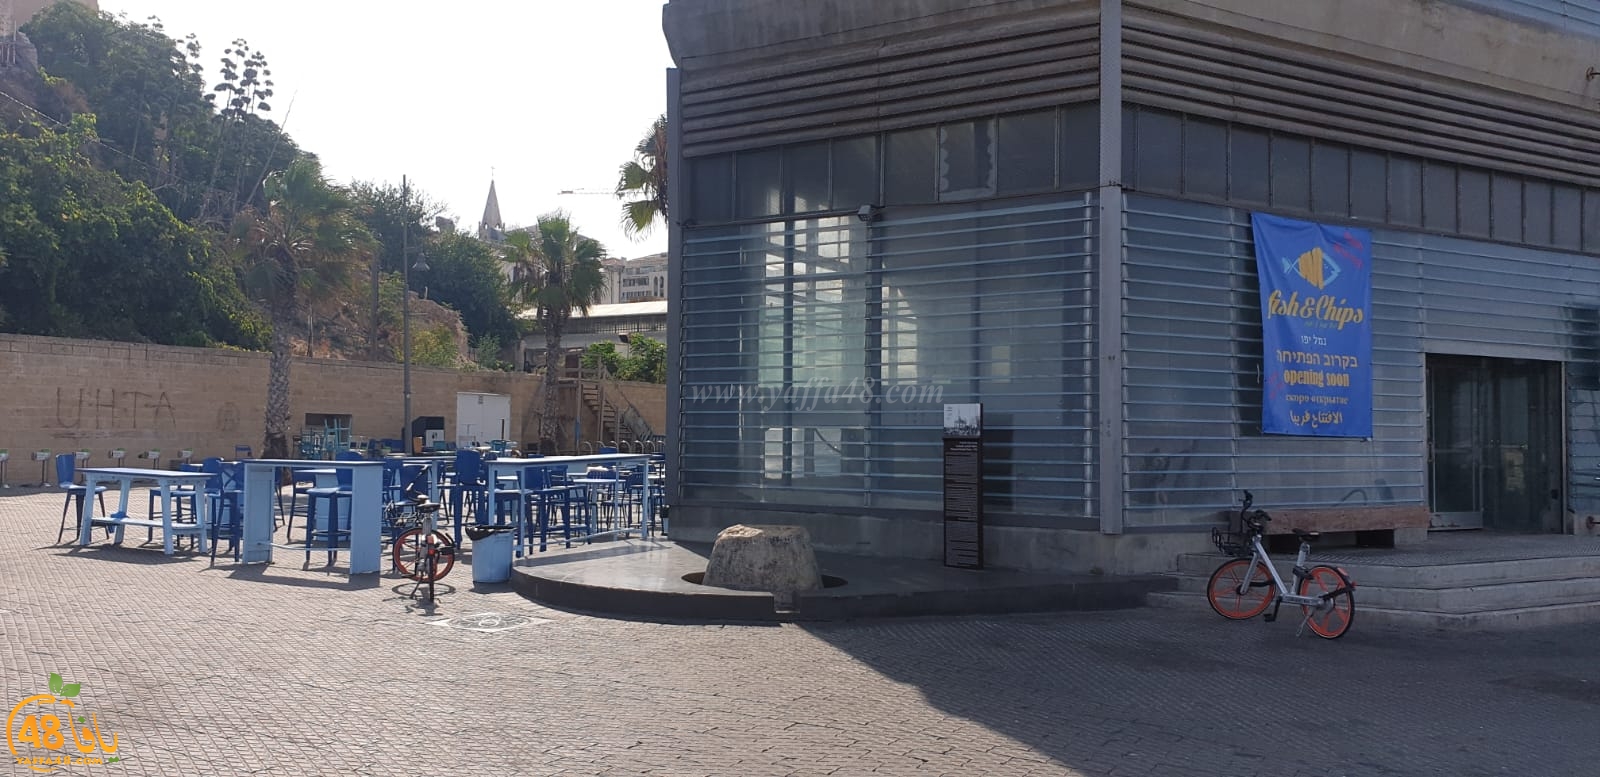   يافا: انتقال مطعم fish & chips للأسماك الطازجة الى مخزن 1 بميناء يافا 